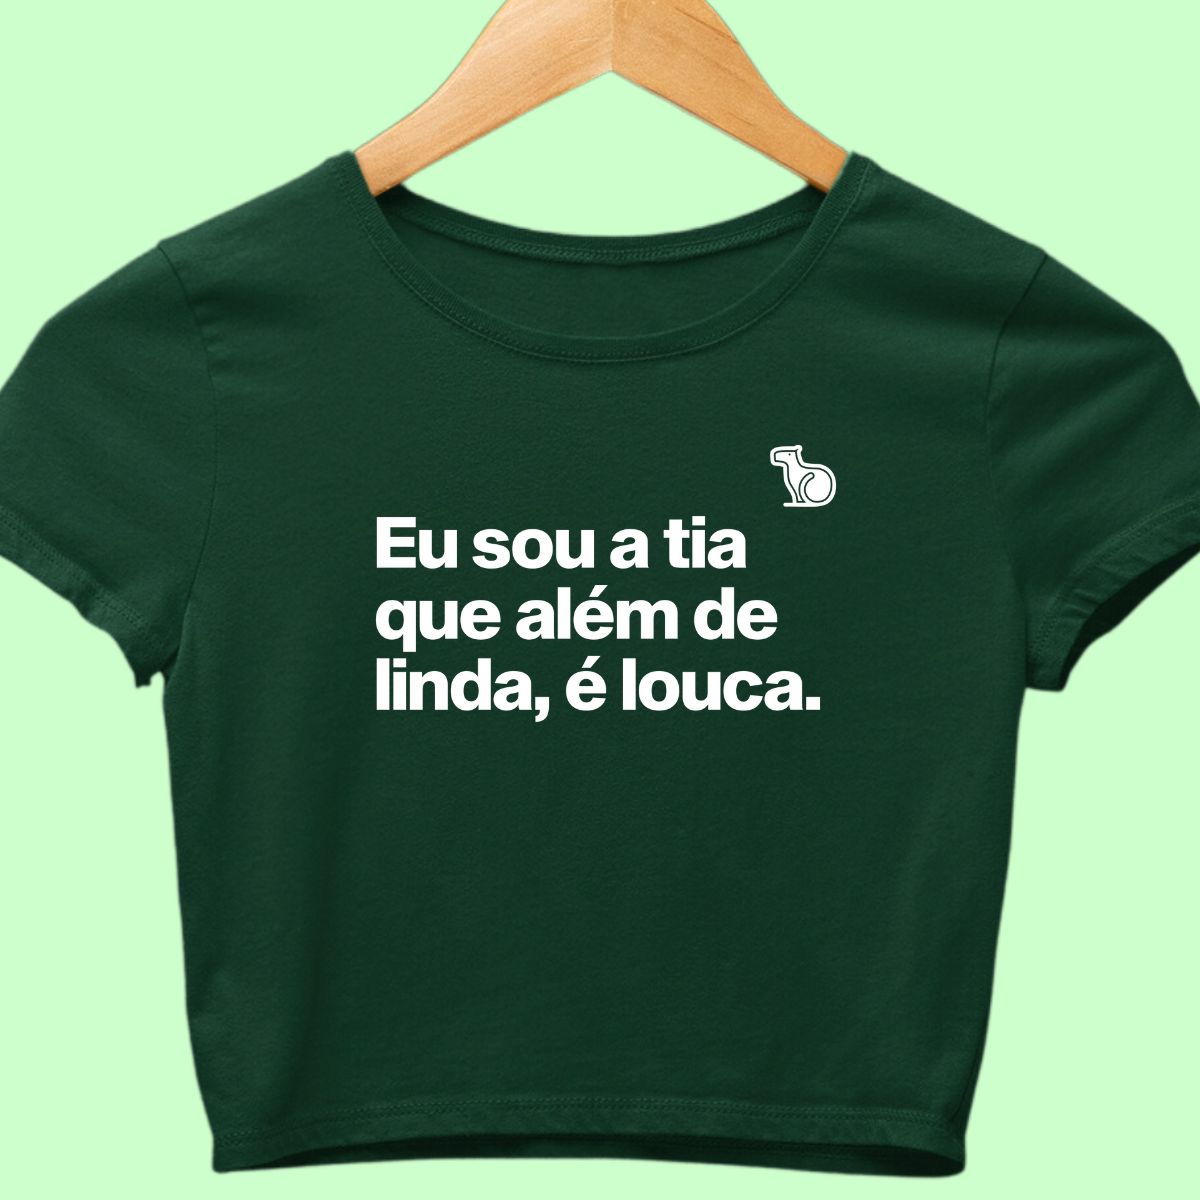 Camiseta cropped com a frase "Sou a tia que além de linda, é louca."  verde.